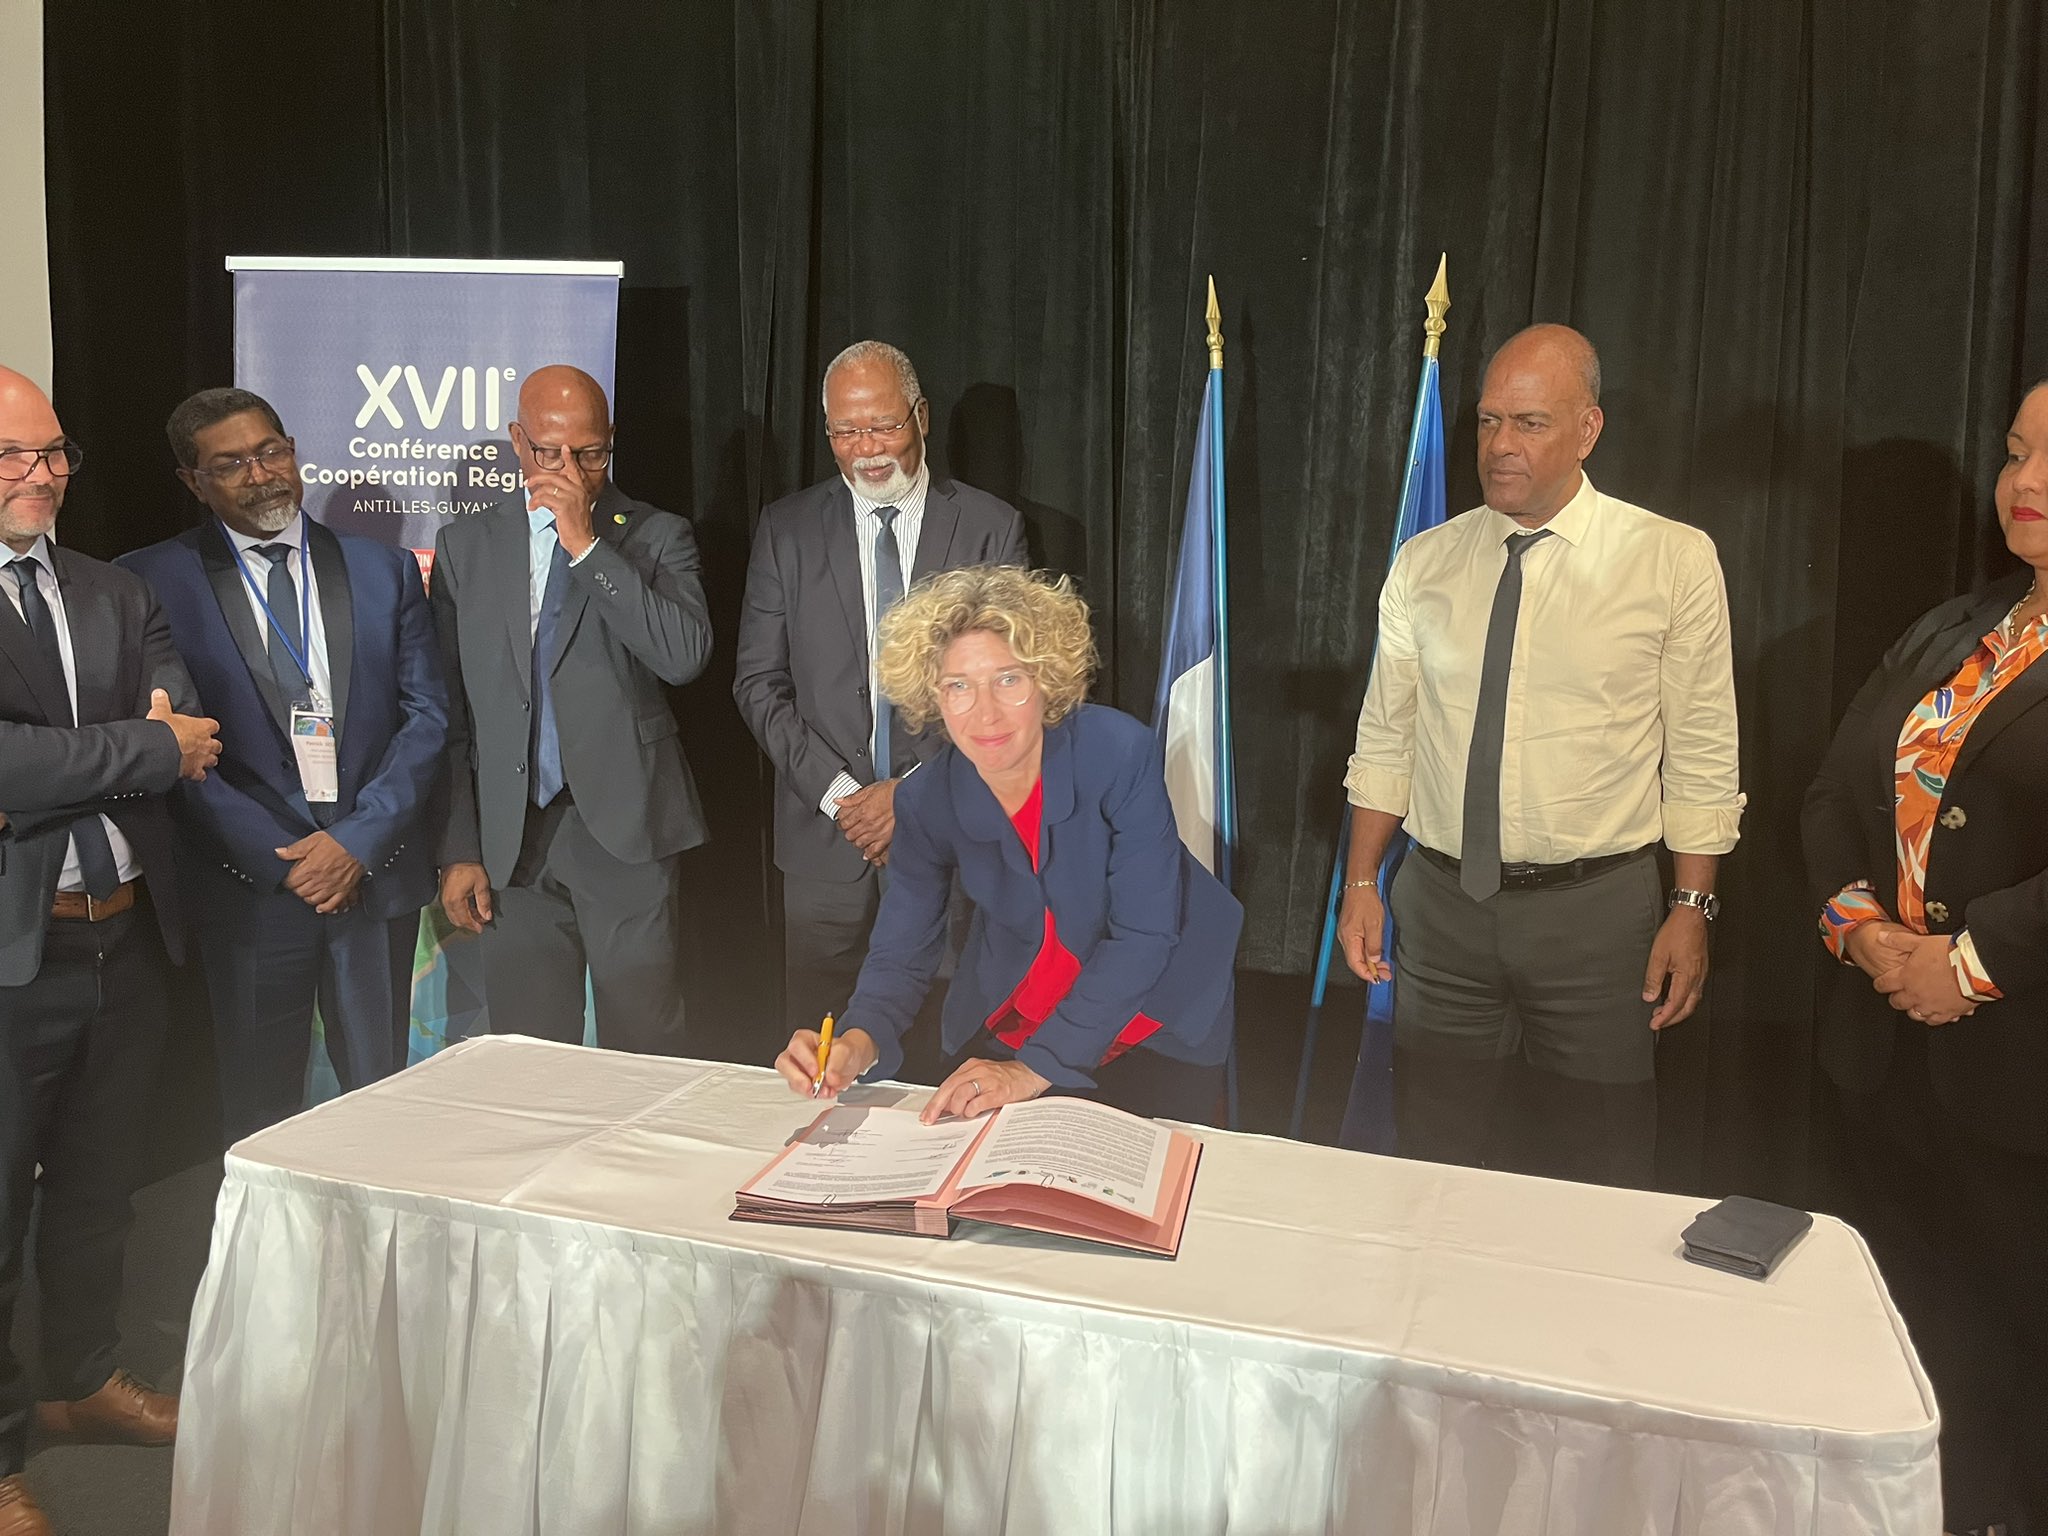     Coopération Régionale : les Antilles-Guyane renforcent leurs liens à Saint-Martin

